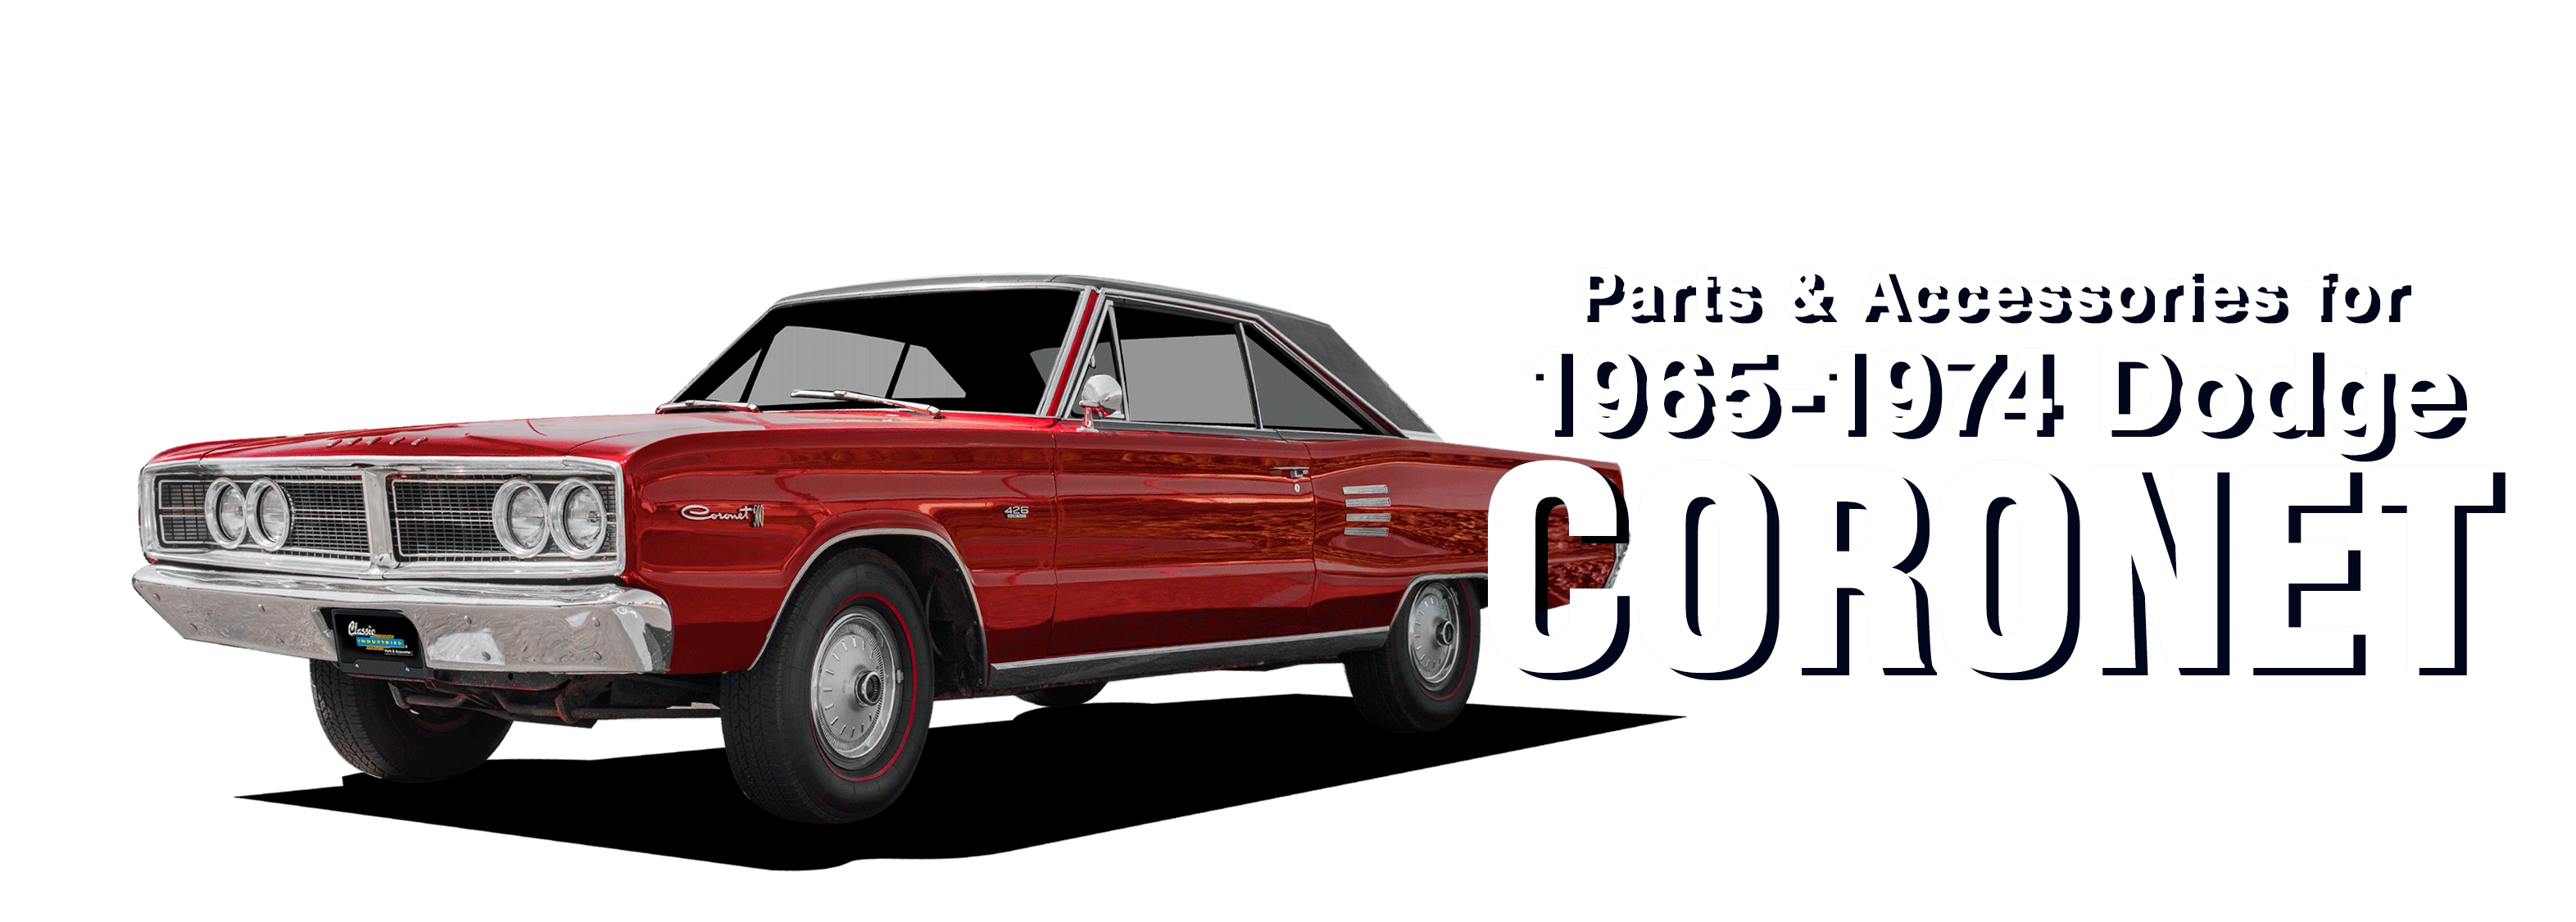 Dodge-coronet-vehicle-desktop